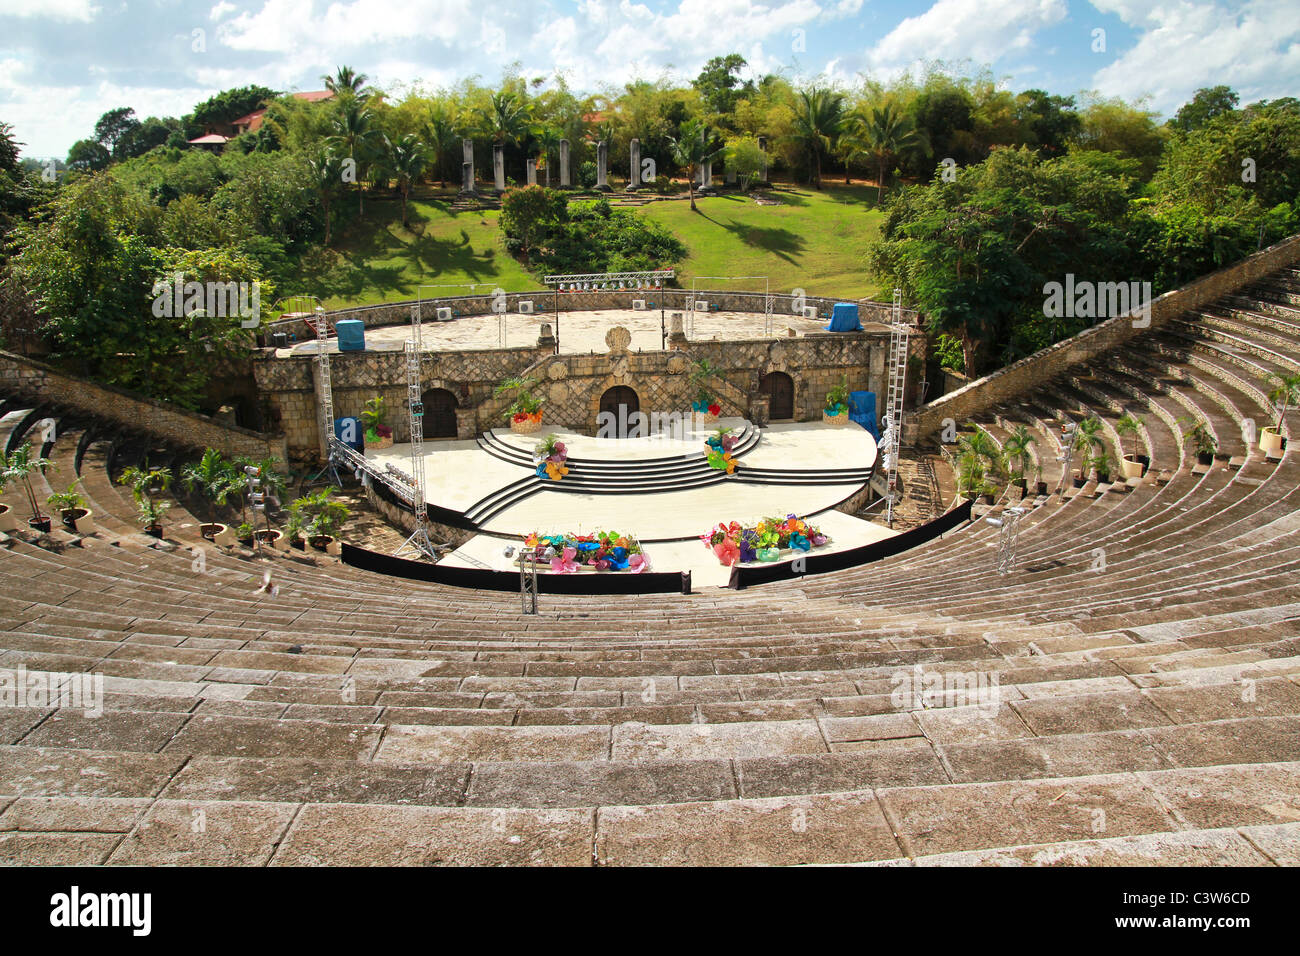 Amphitheatre in Altos de Chavon, Casa de Campo Stock Photo